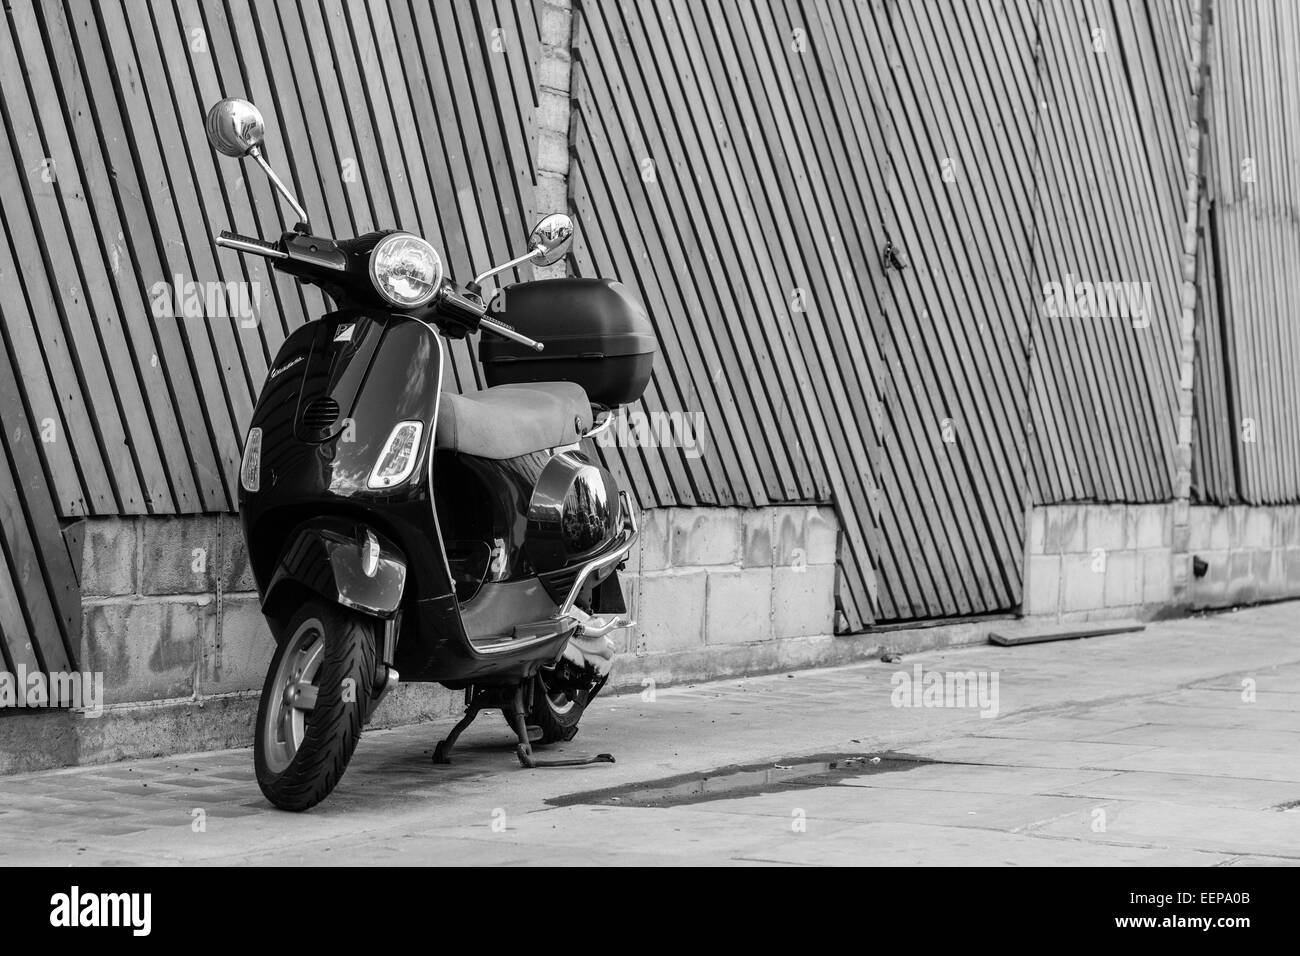 La ciudad de Londres, ciclomotor Vespa Street Style fotografía Foto de stock